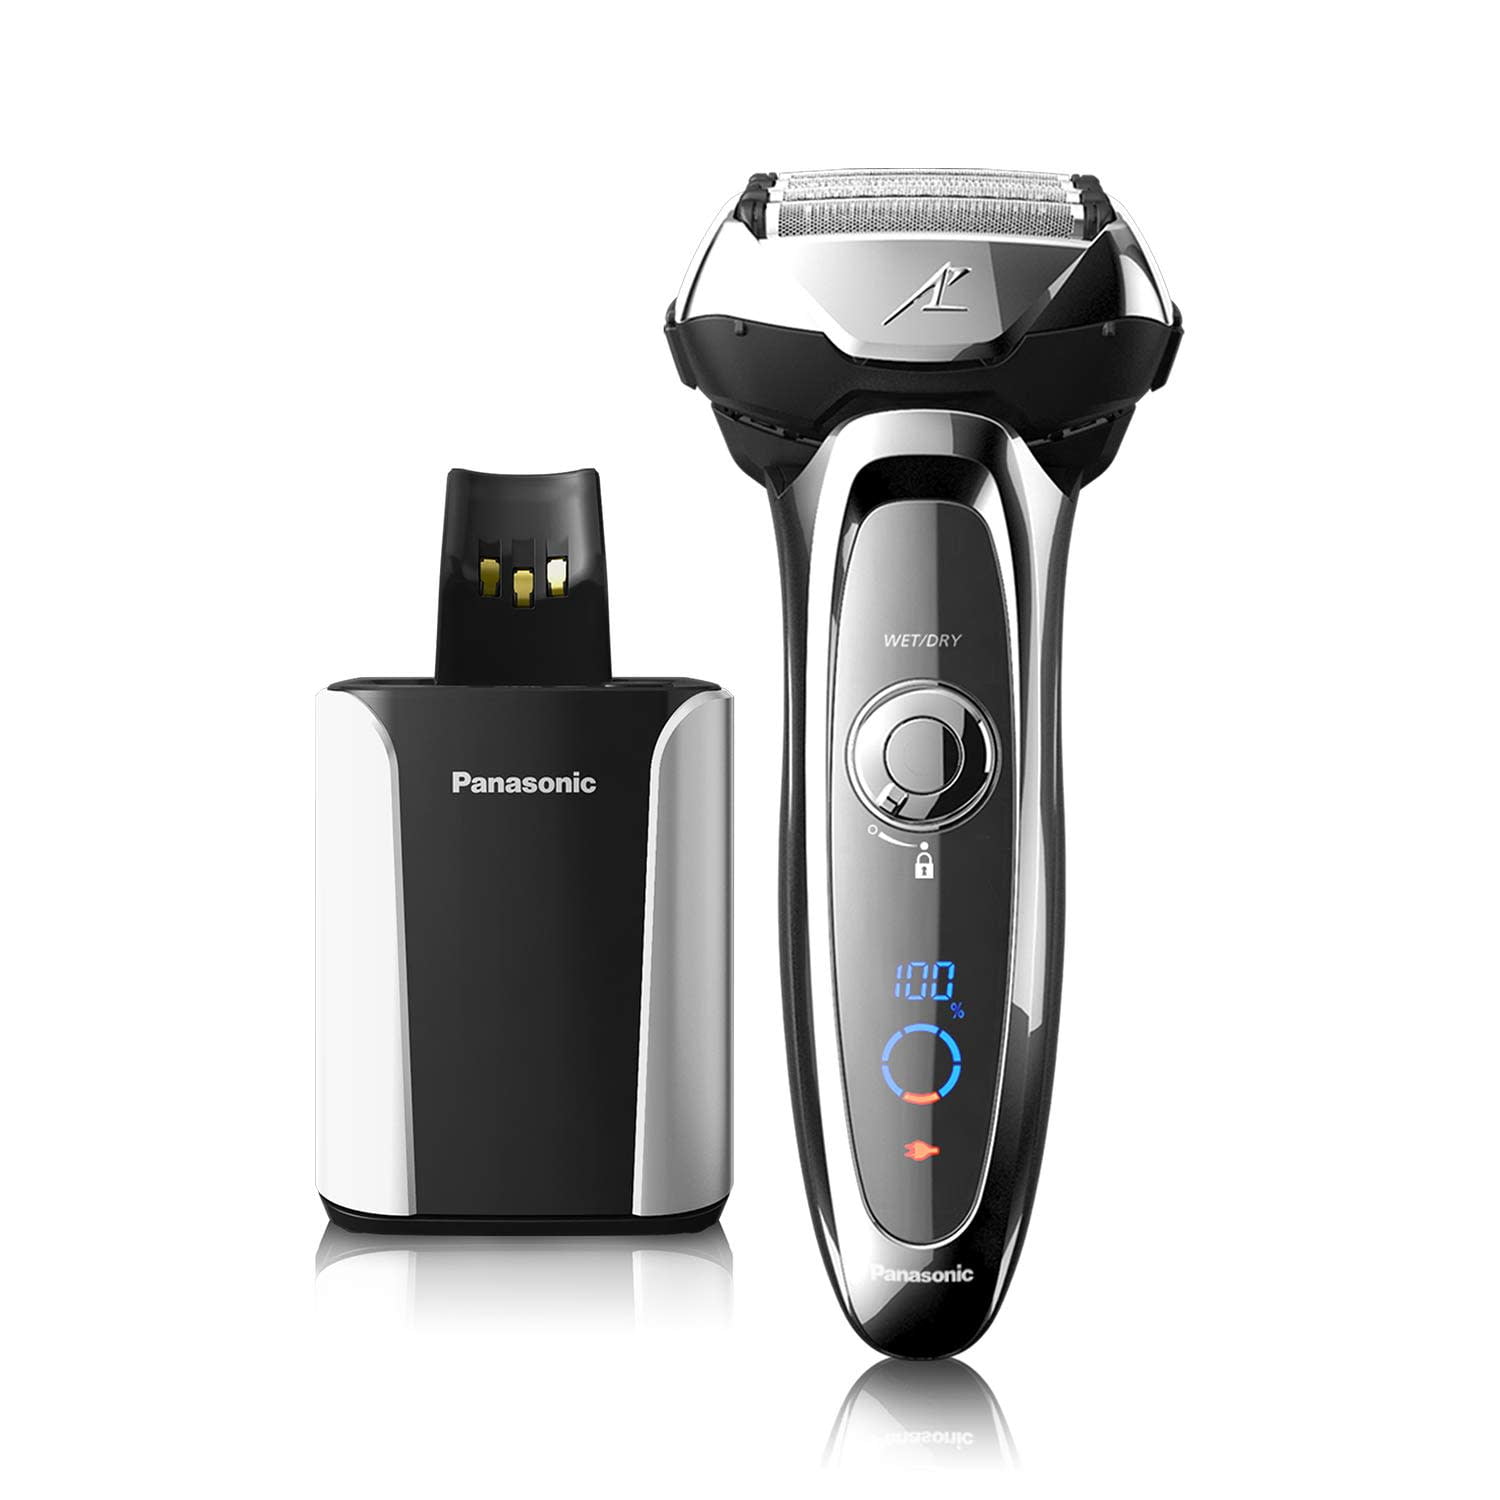 Panasonic ARC5 - Maquinilla de afeitar eléctrica para hombres con  recortadora emergente, afeitadora eléctrica de 5 hojas en seco y húmedo con  sensor